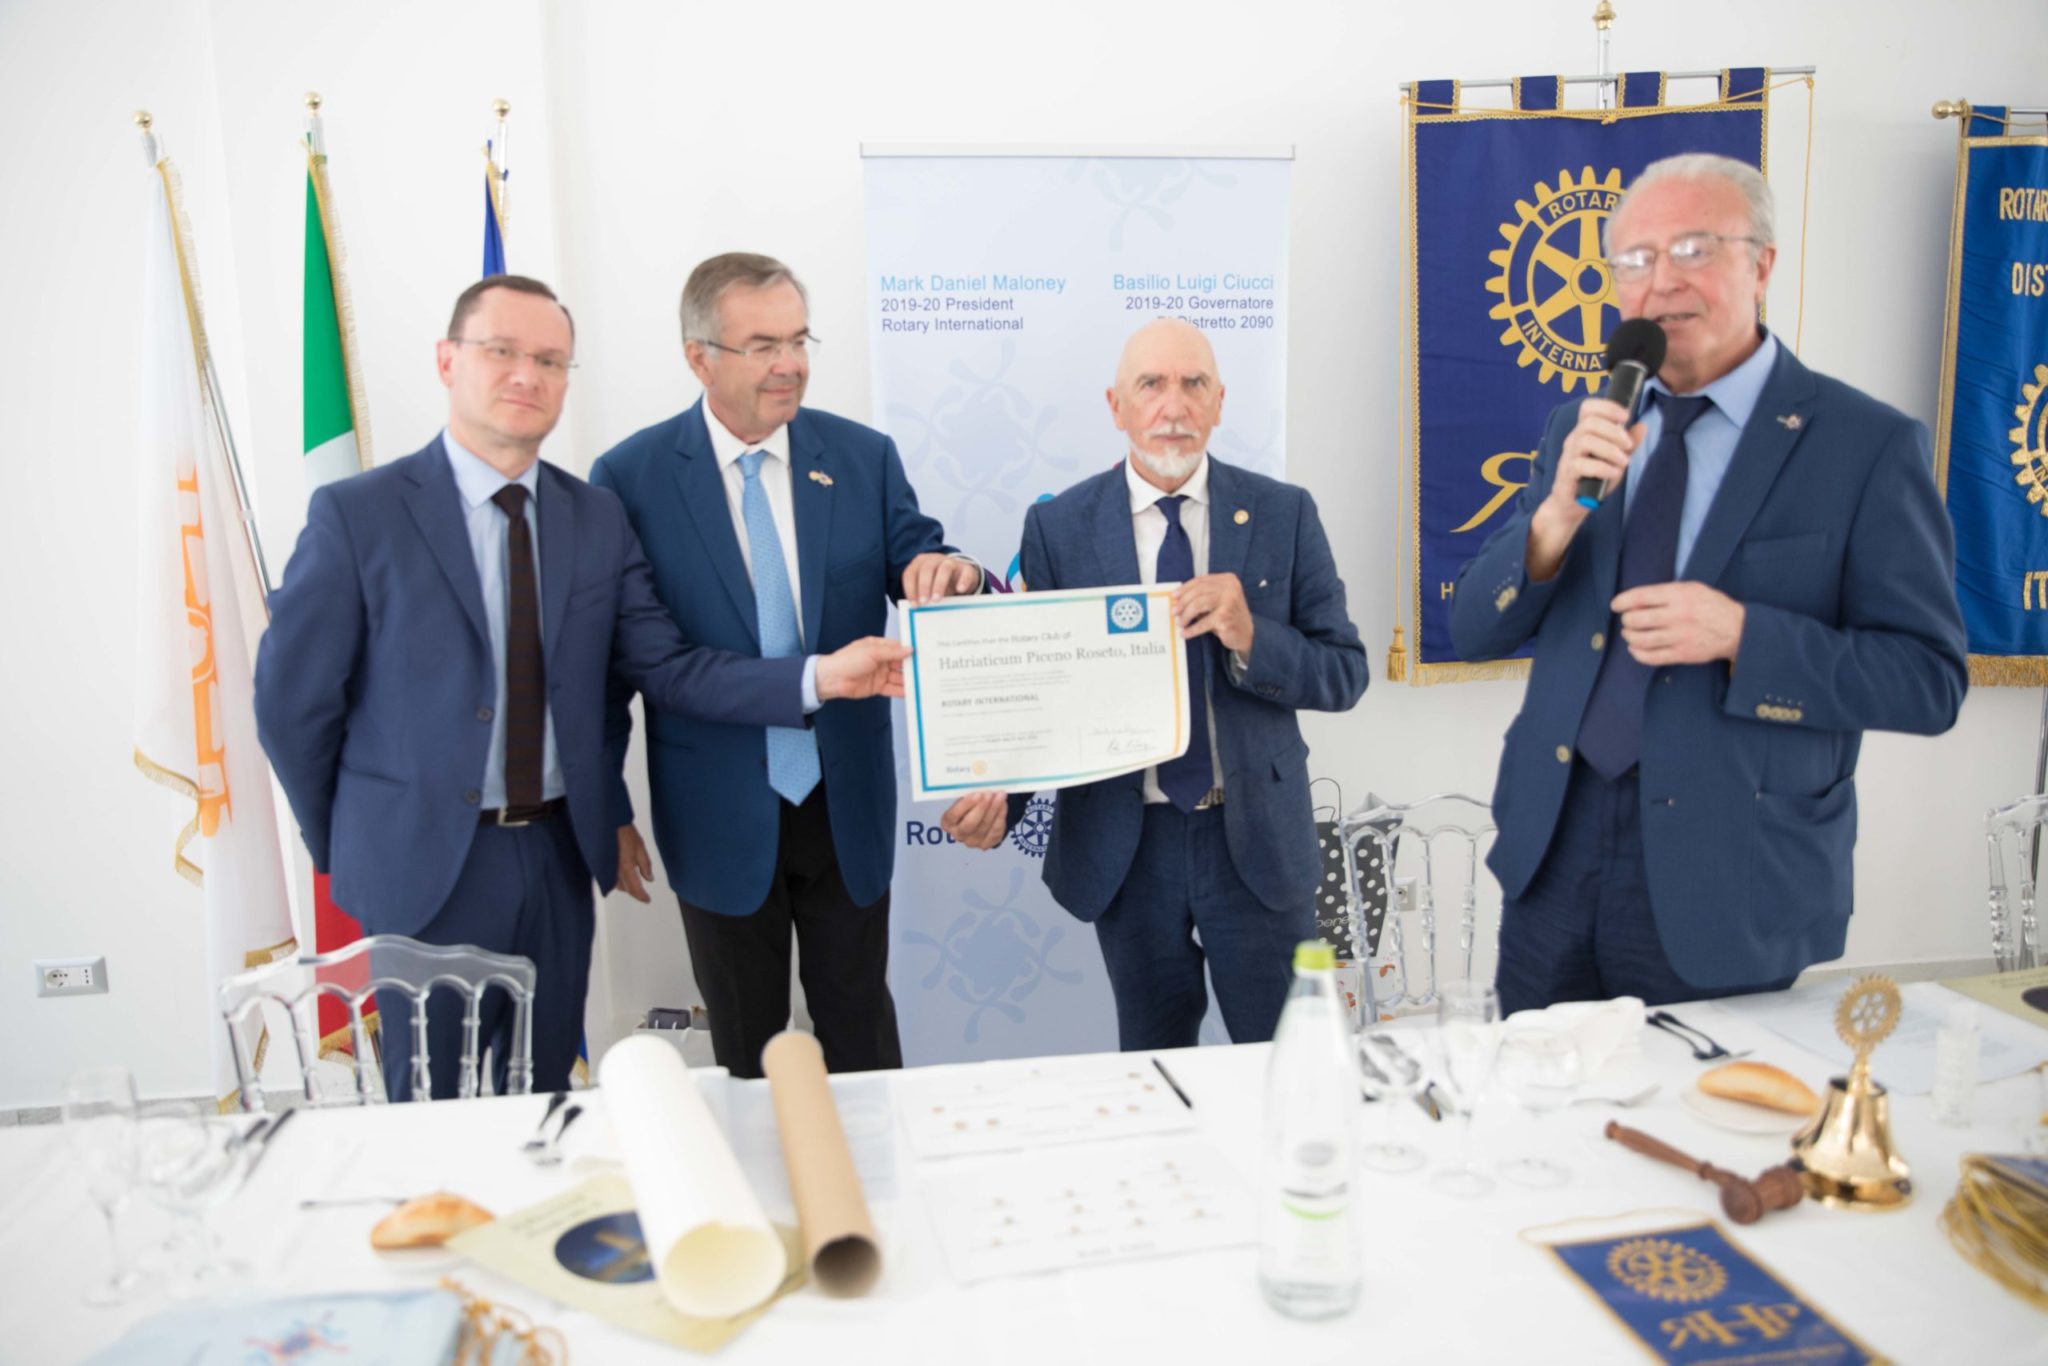 Silvianio Scardecchia nuovo Presidente del “Club Rotary Hatriaticum Piceno Roseto”